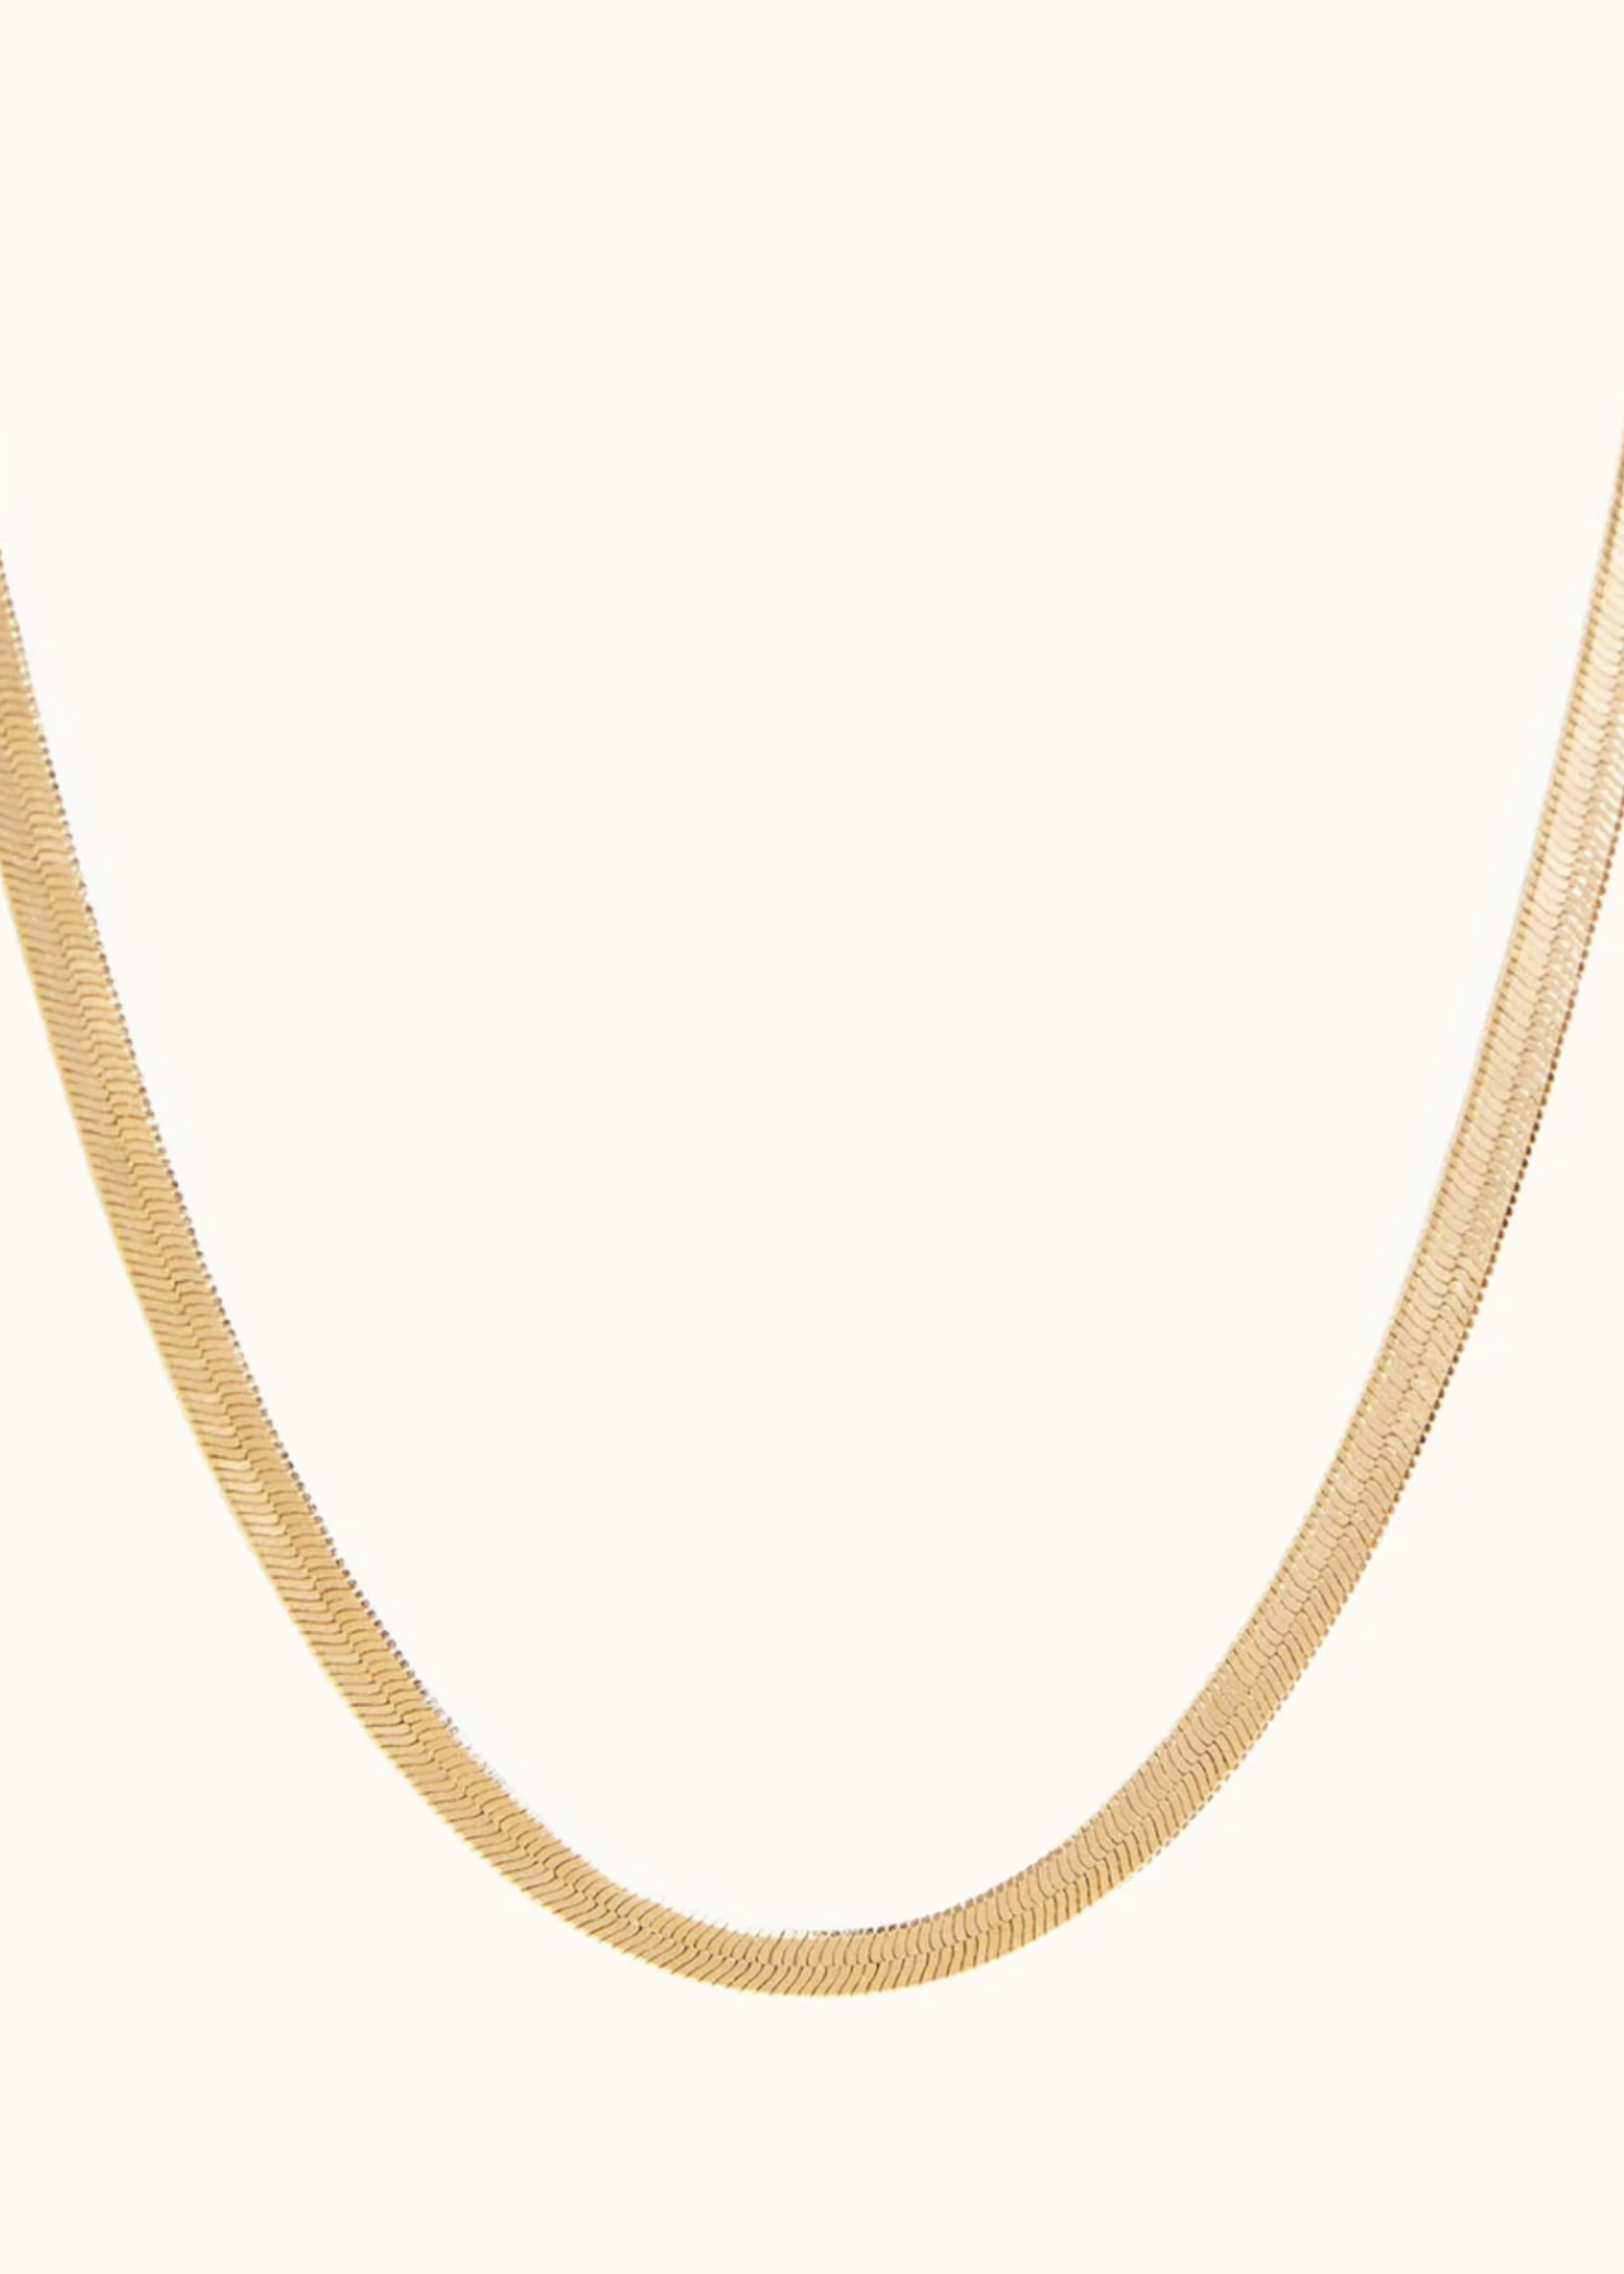 Elitaire Boutique Herringbone Chain Necklace: Vermeil